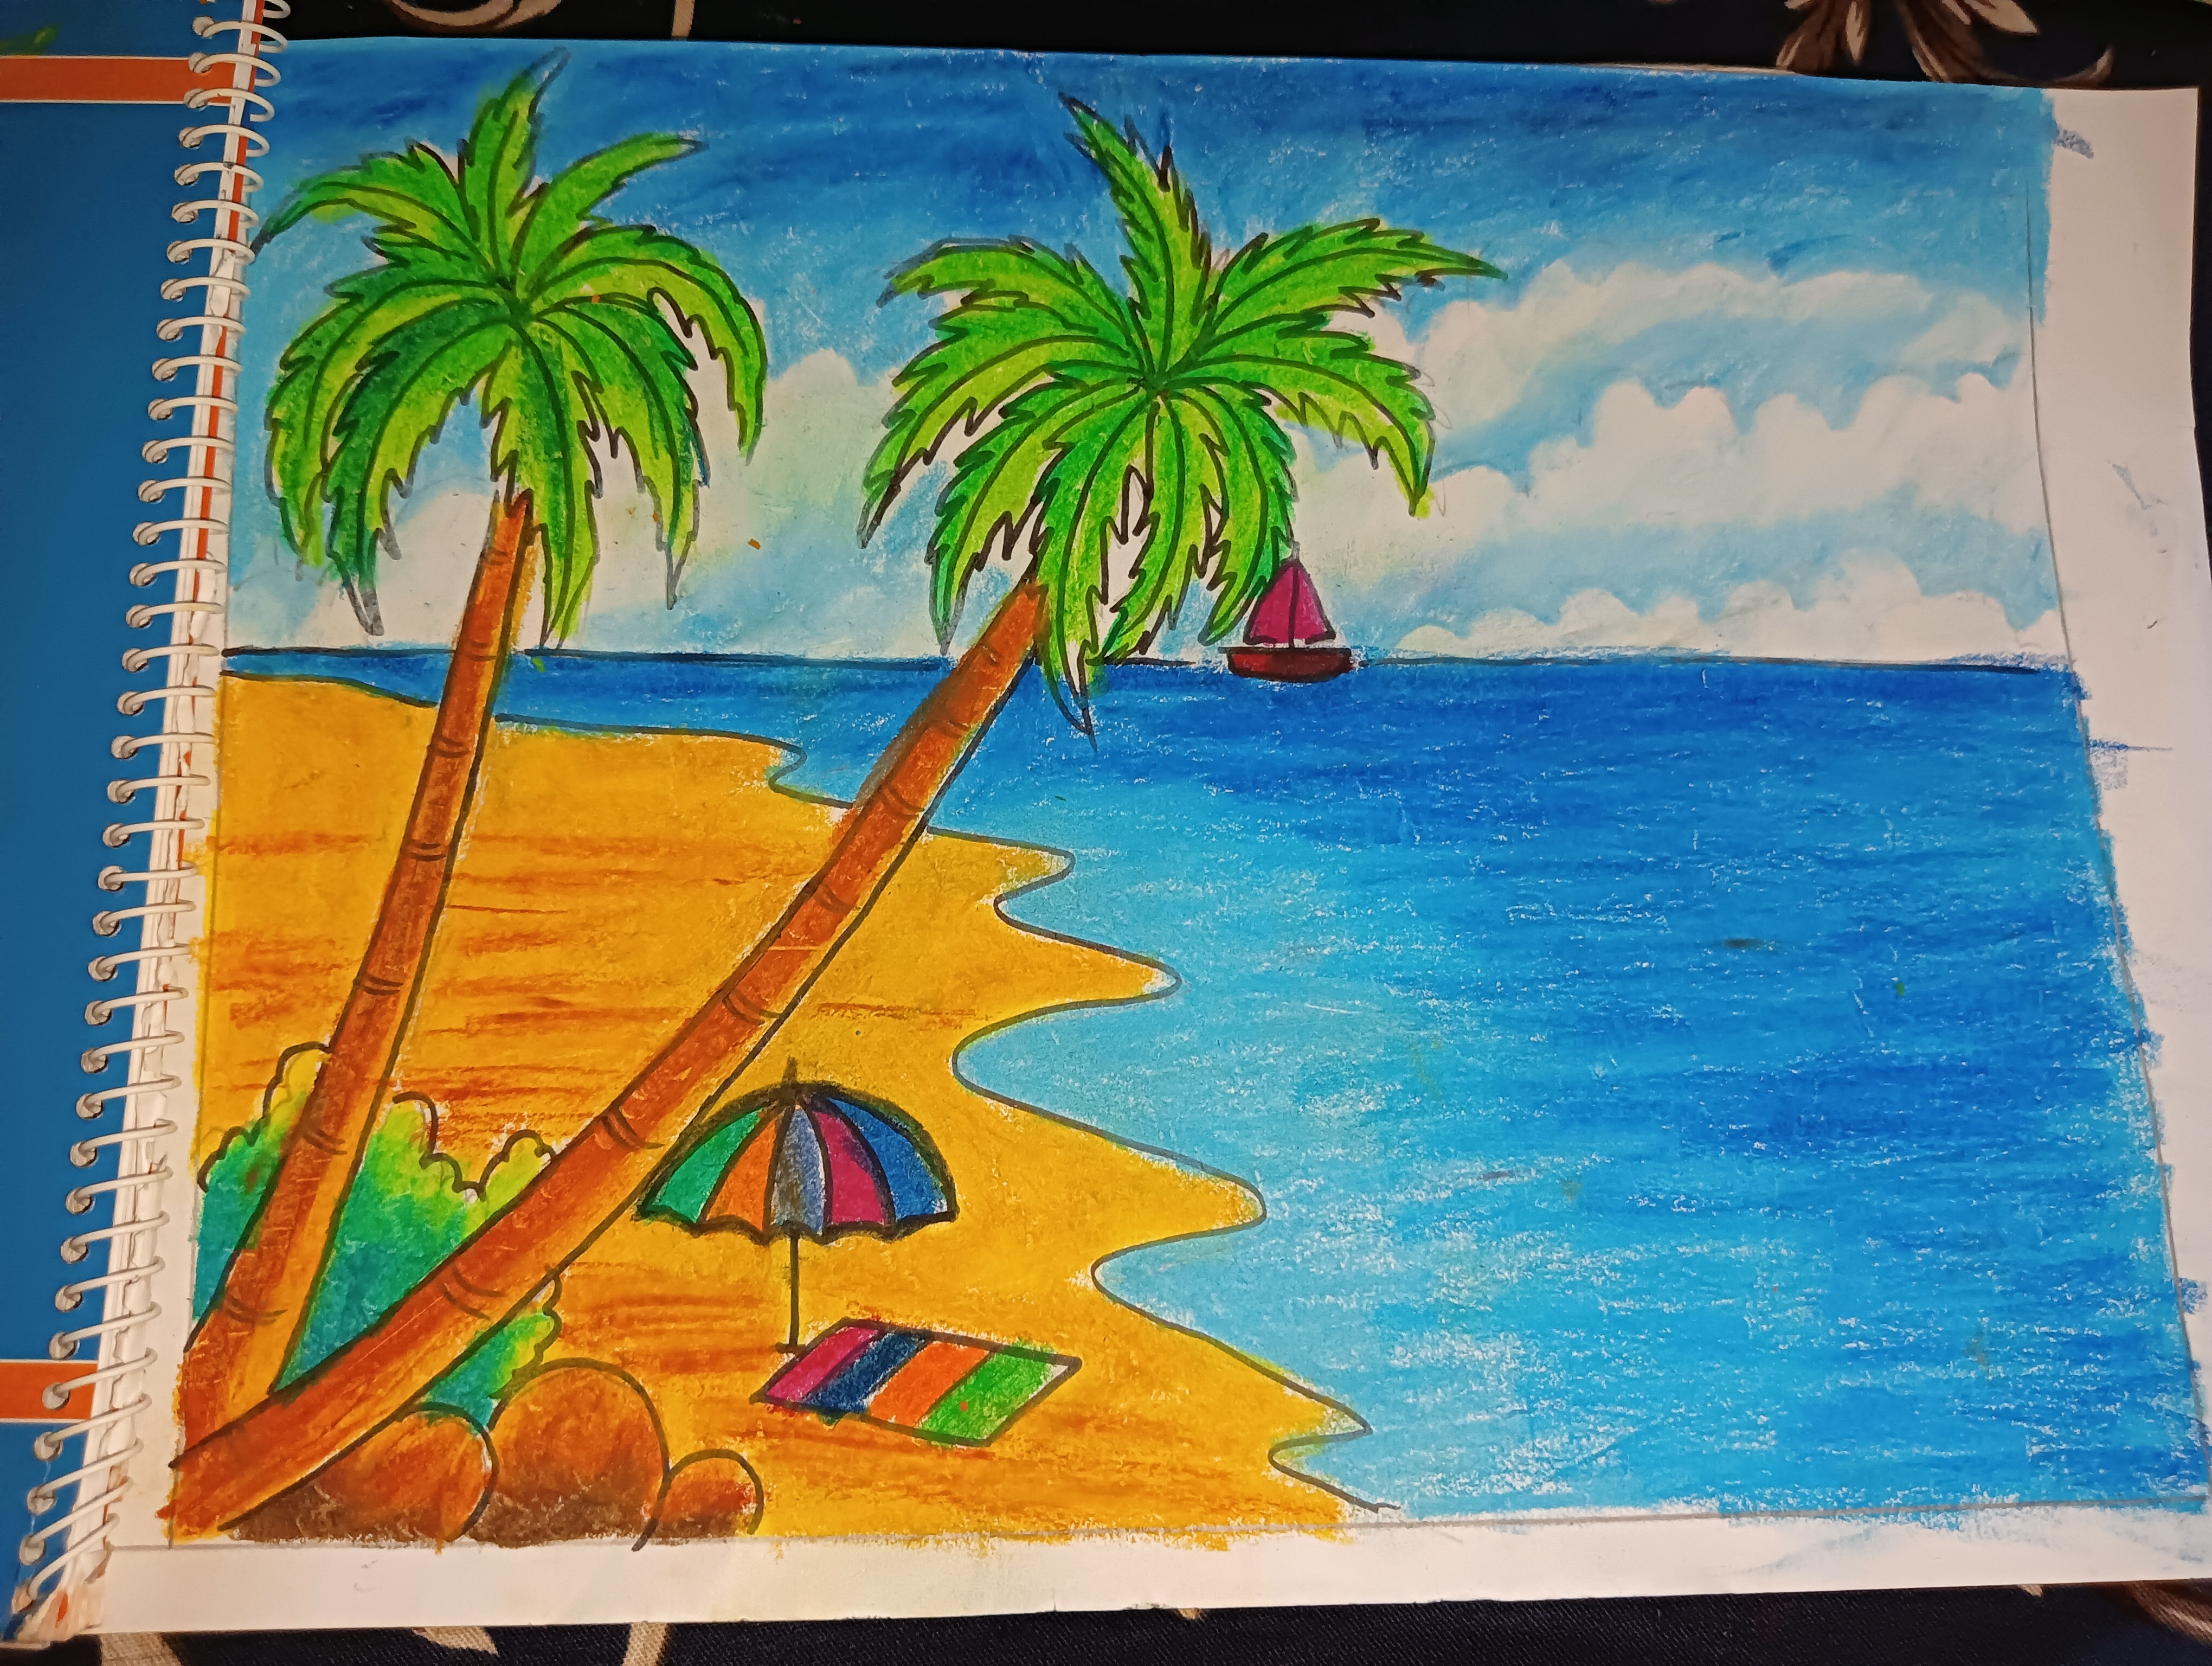 Scenes with beach and ocean 445748 Vector Art at Vecteezy